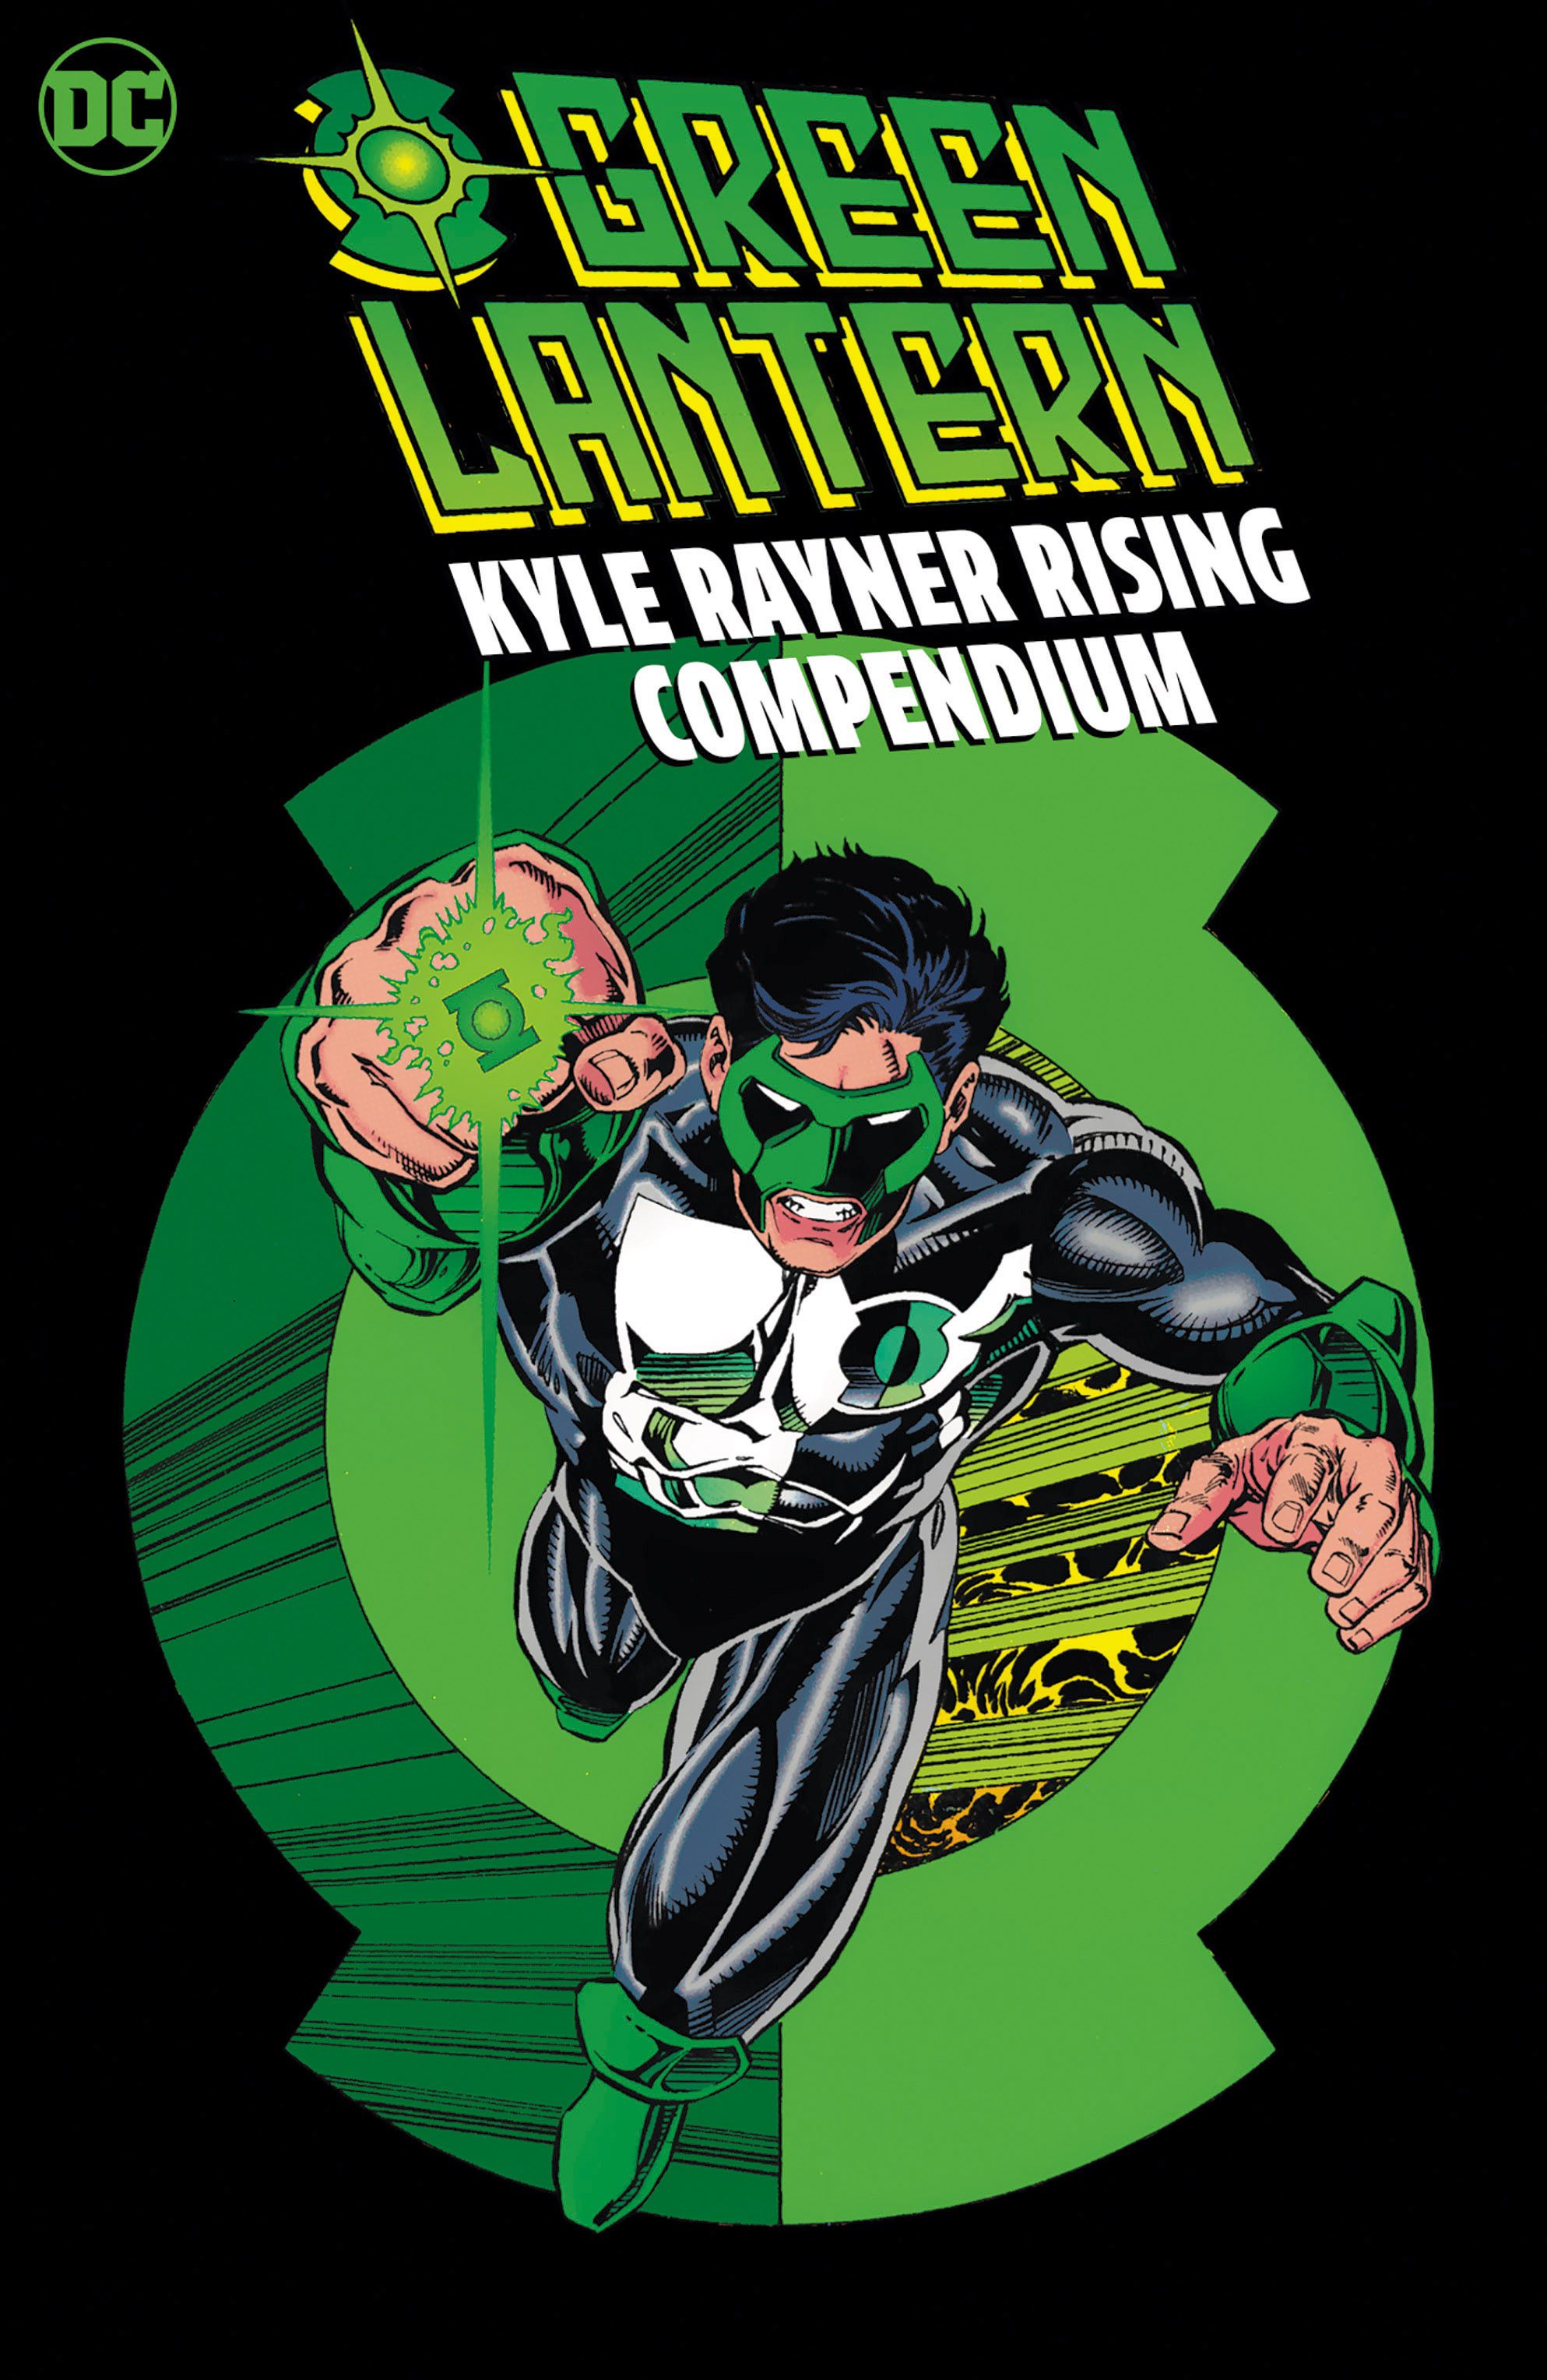 Green Lantern Kyle Rayner Rising Compendium